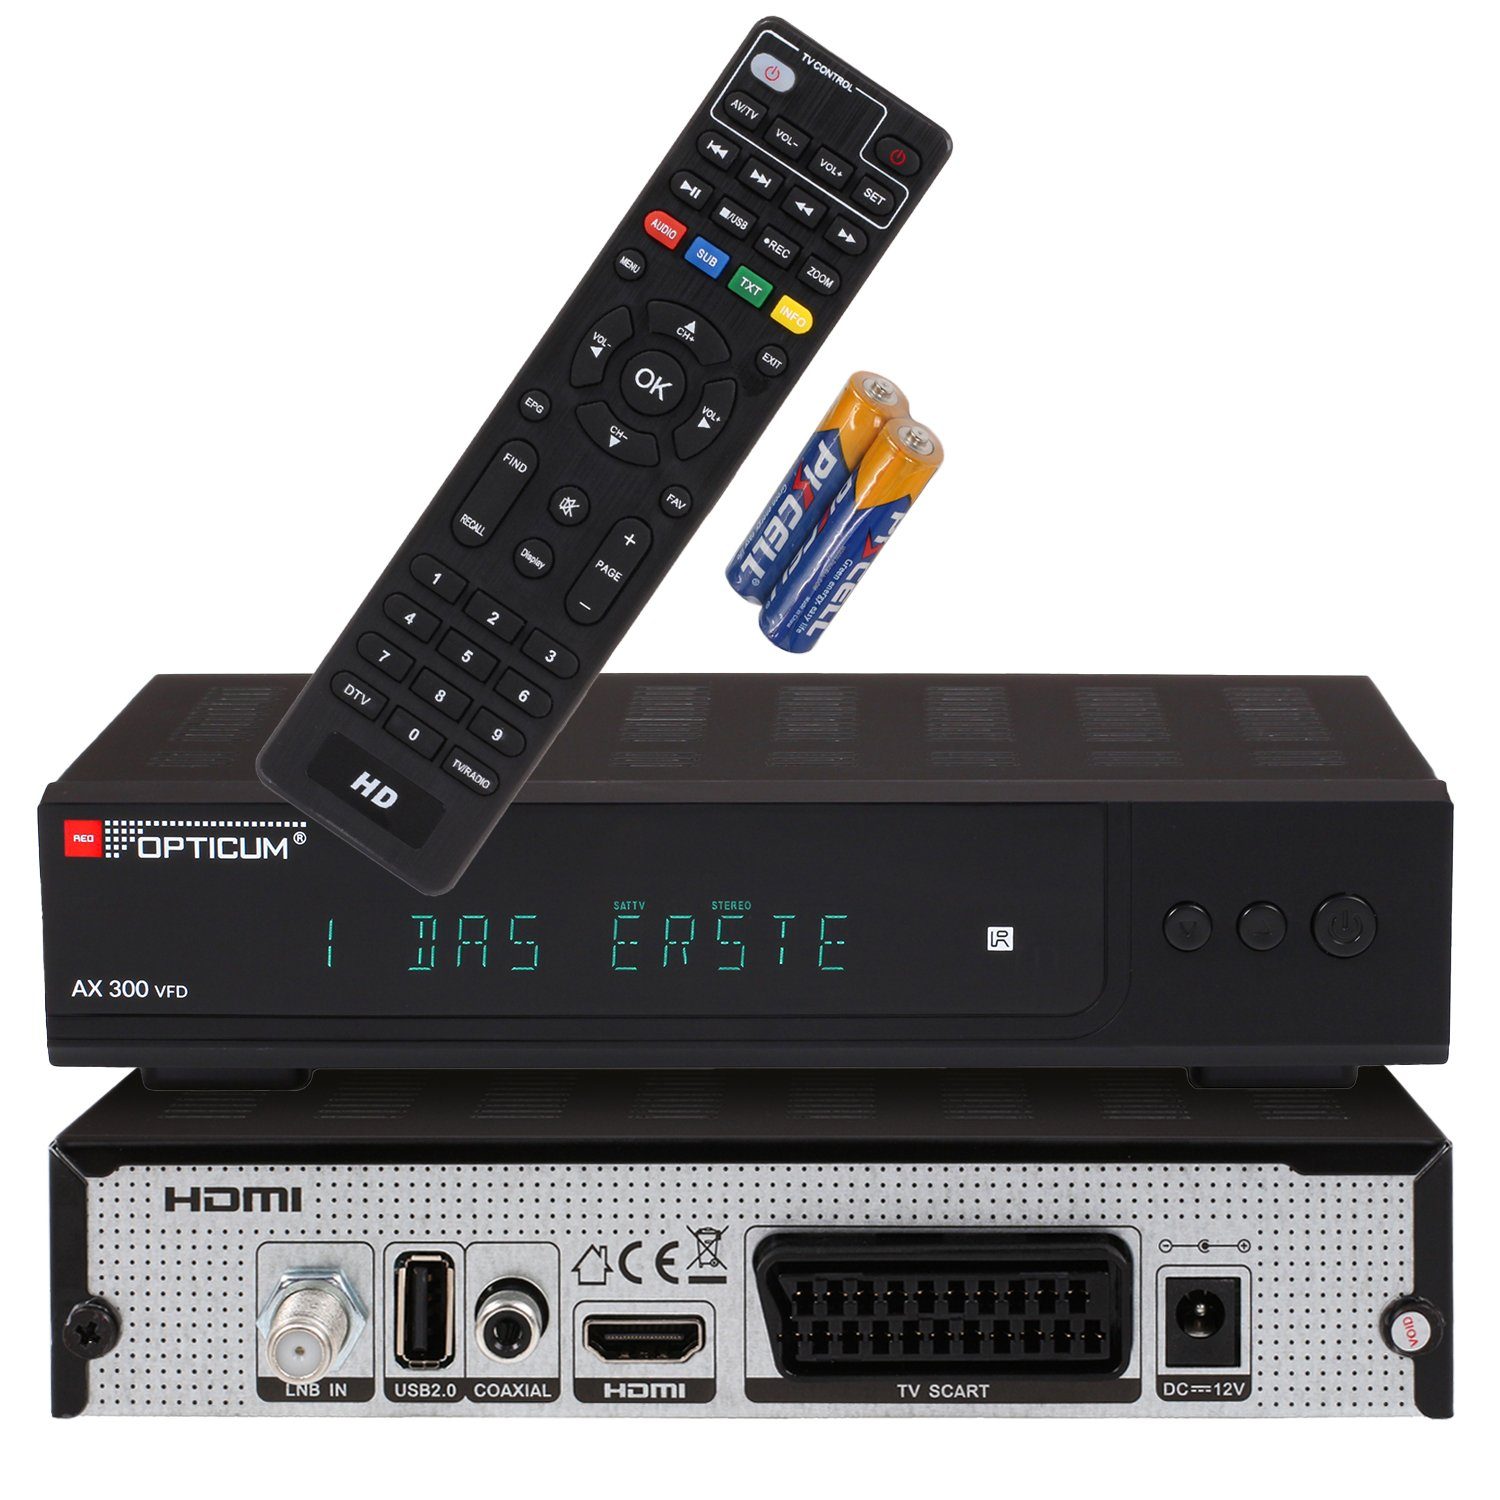 RED OPTICUM »AX 300 VFD ohne Aufnahmefunktion« SAT-Receiver (Digitaler  Satelliten-Receiver HD-TV mit alphanumerischem Display - DVB-S2 - HDMI -  SCART - USB 2.0 - Coaxial Audio I 12V Netzteil ideal für Camping)